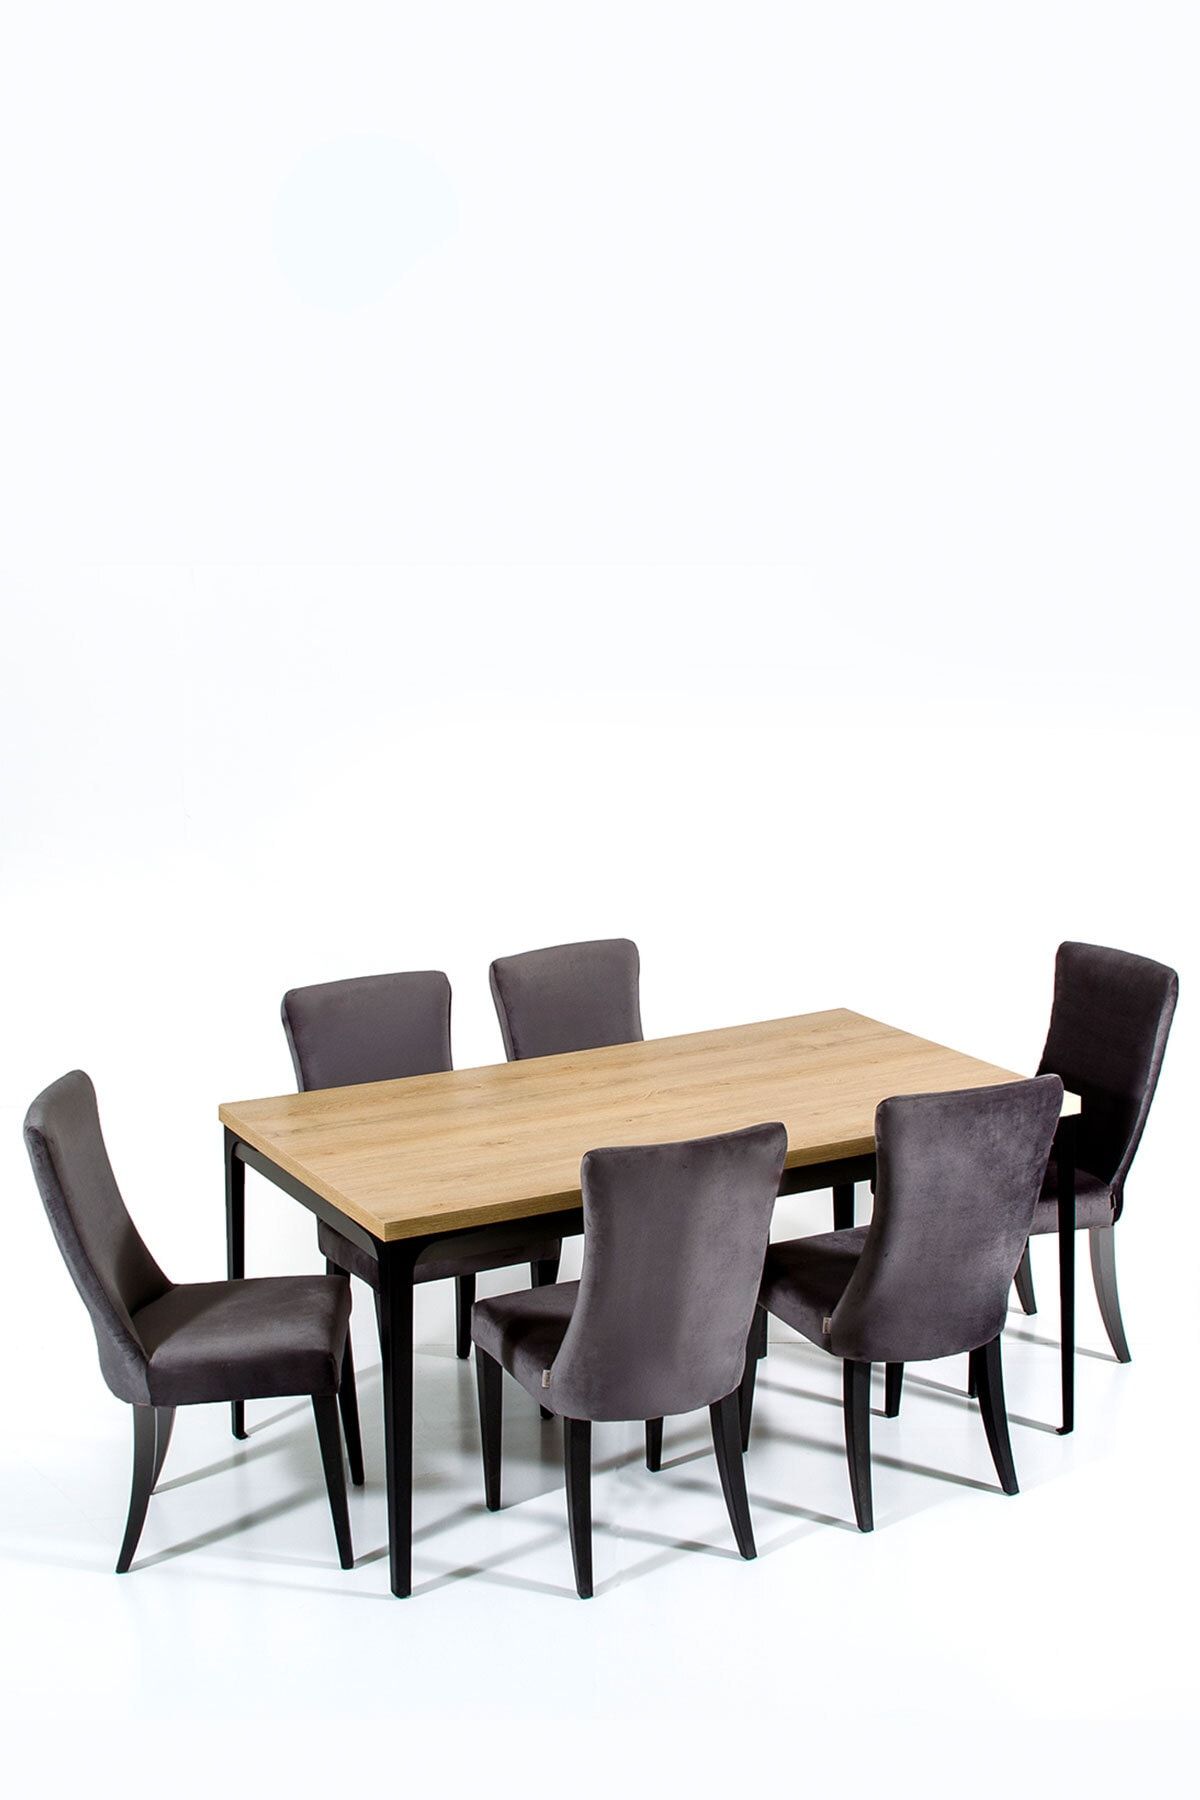 Modalife Milano 6 Sandalye 1 Sabit Masa Yemek Masası Takımı 6 Kişilik - Antrasit